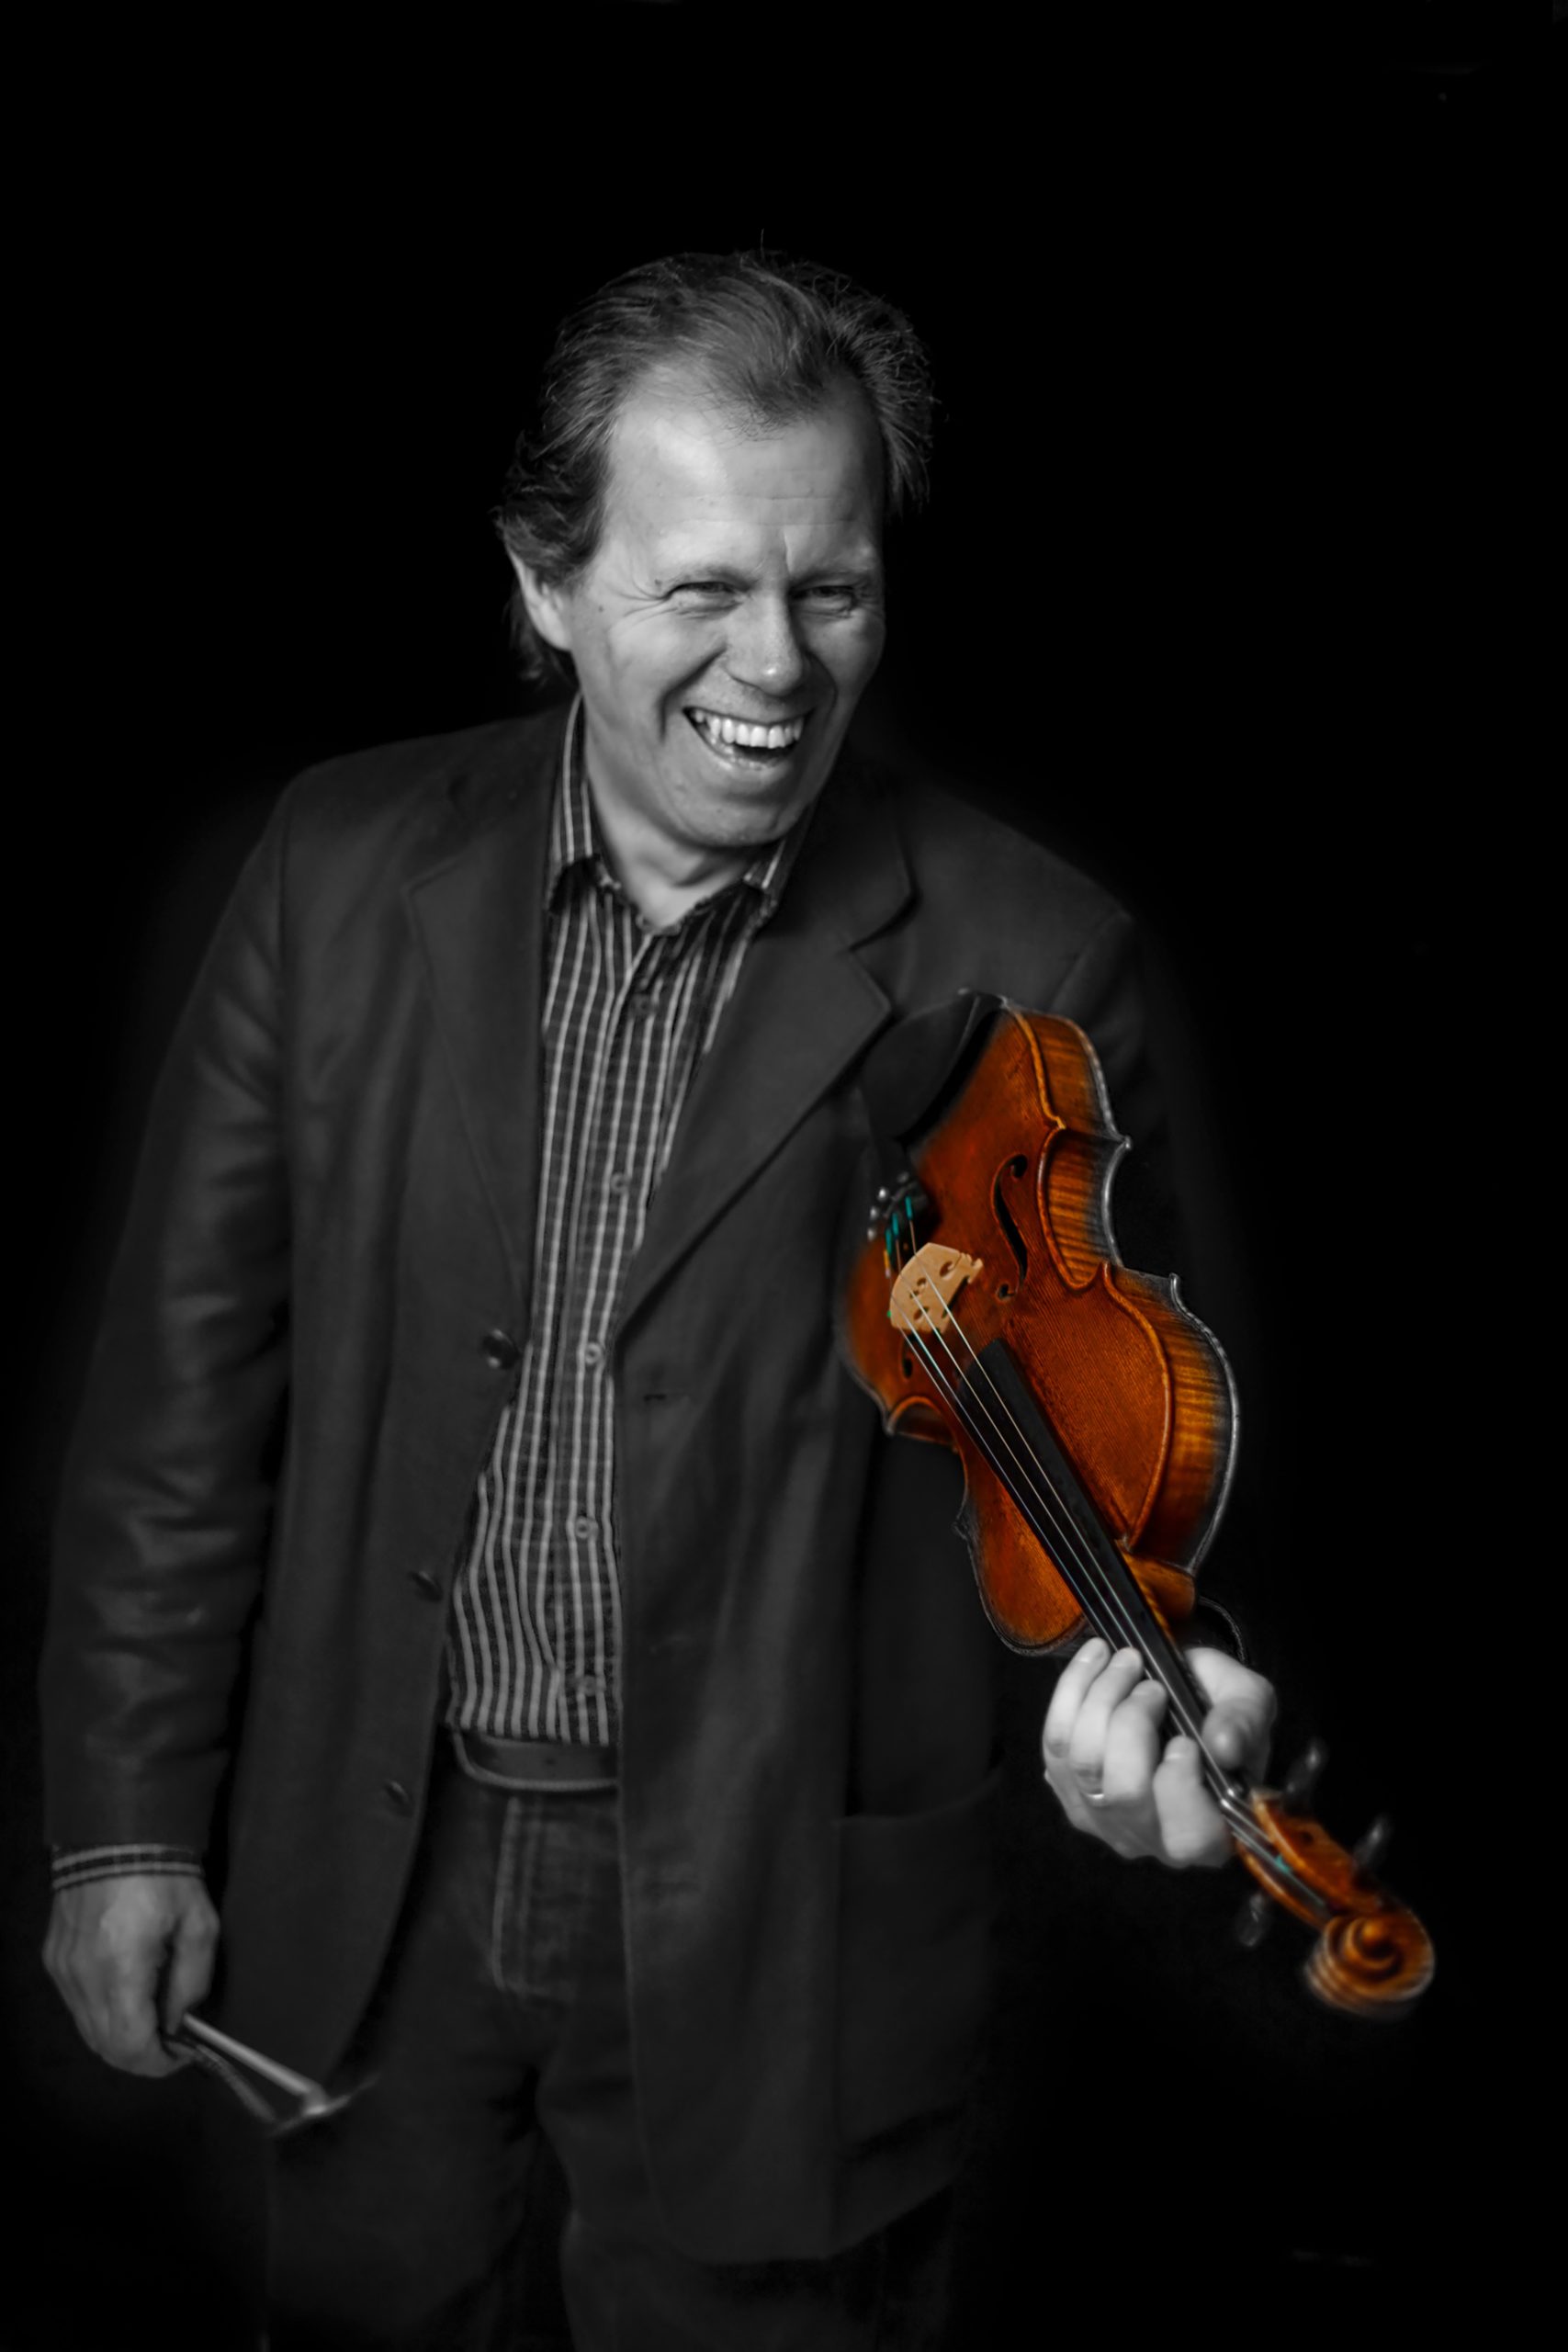 På bilden syns berättaren och spelmannen Thomas Andersson. Thomas ler samtidigt som han håller en fiol i vänster hand och en stråke i höger hand.